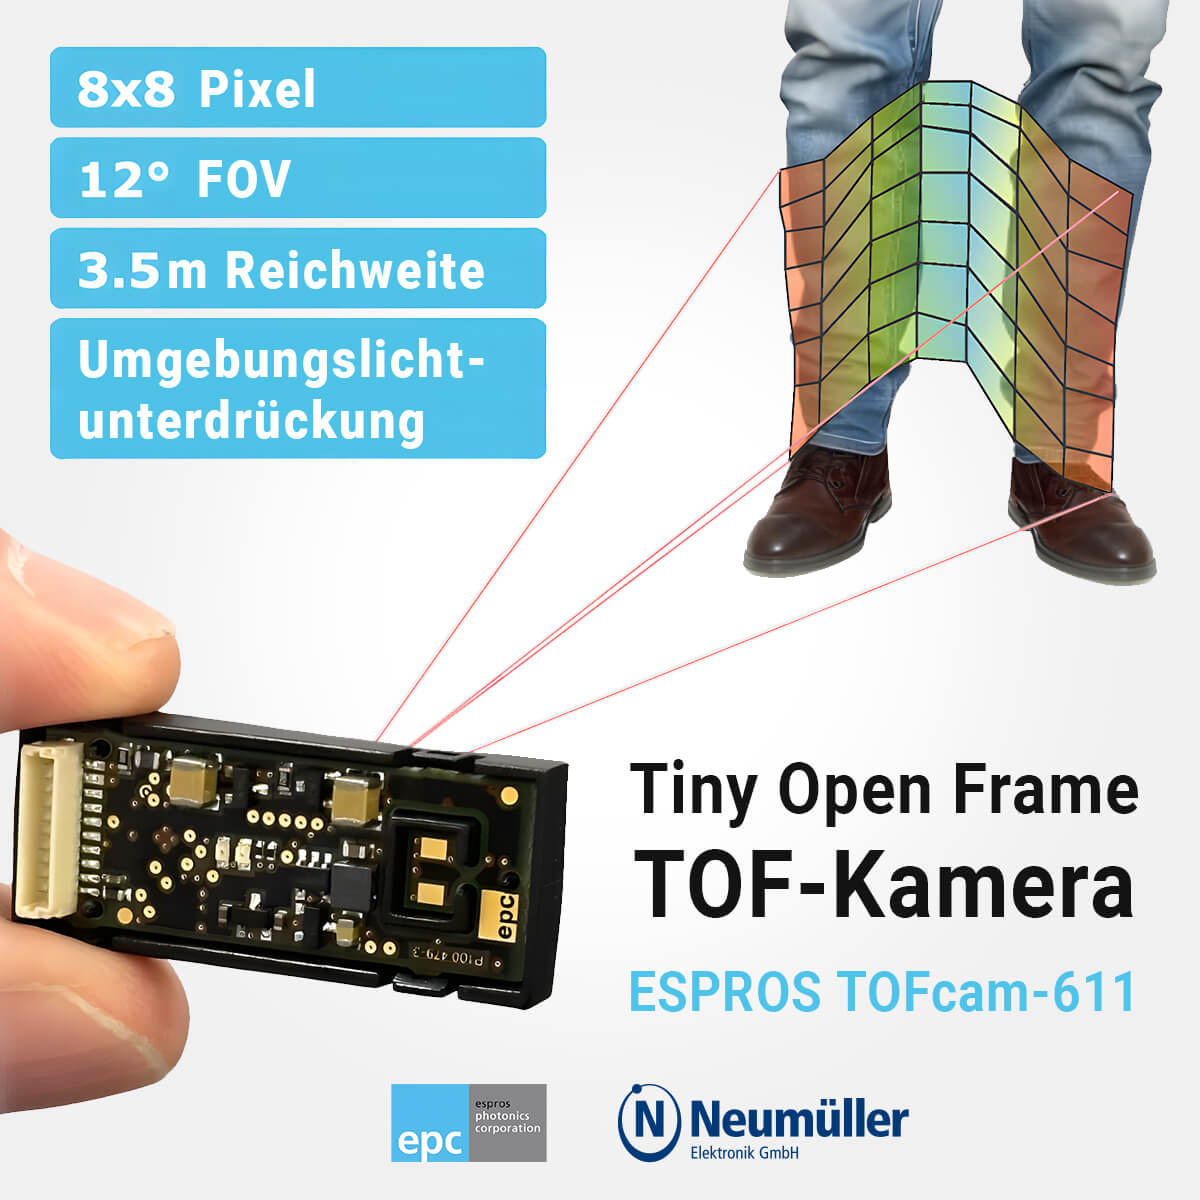 Tiny Open Frame TOF-Kamera: ESPROS TOFcam-611